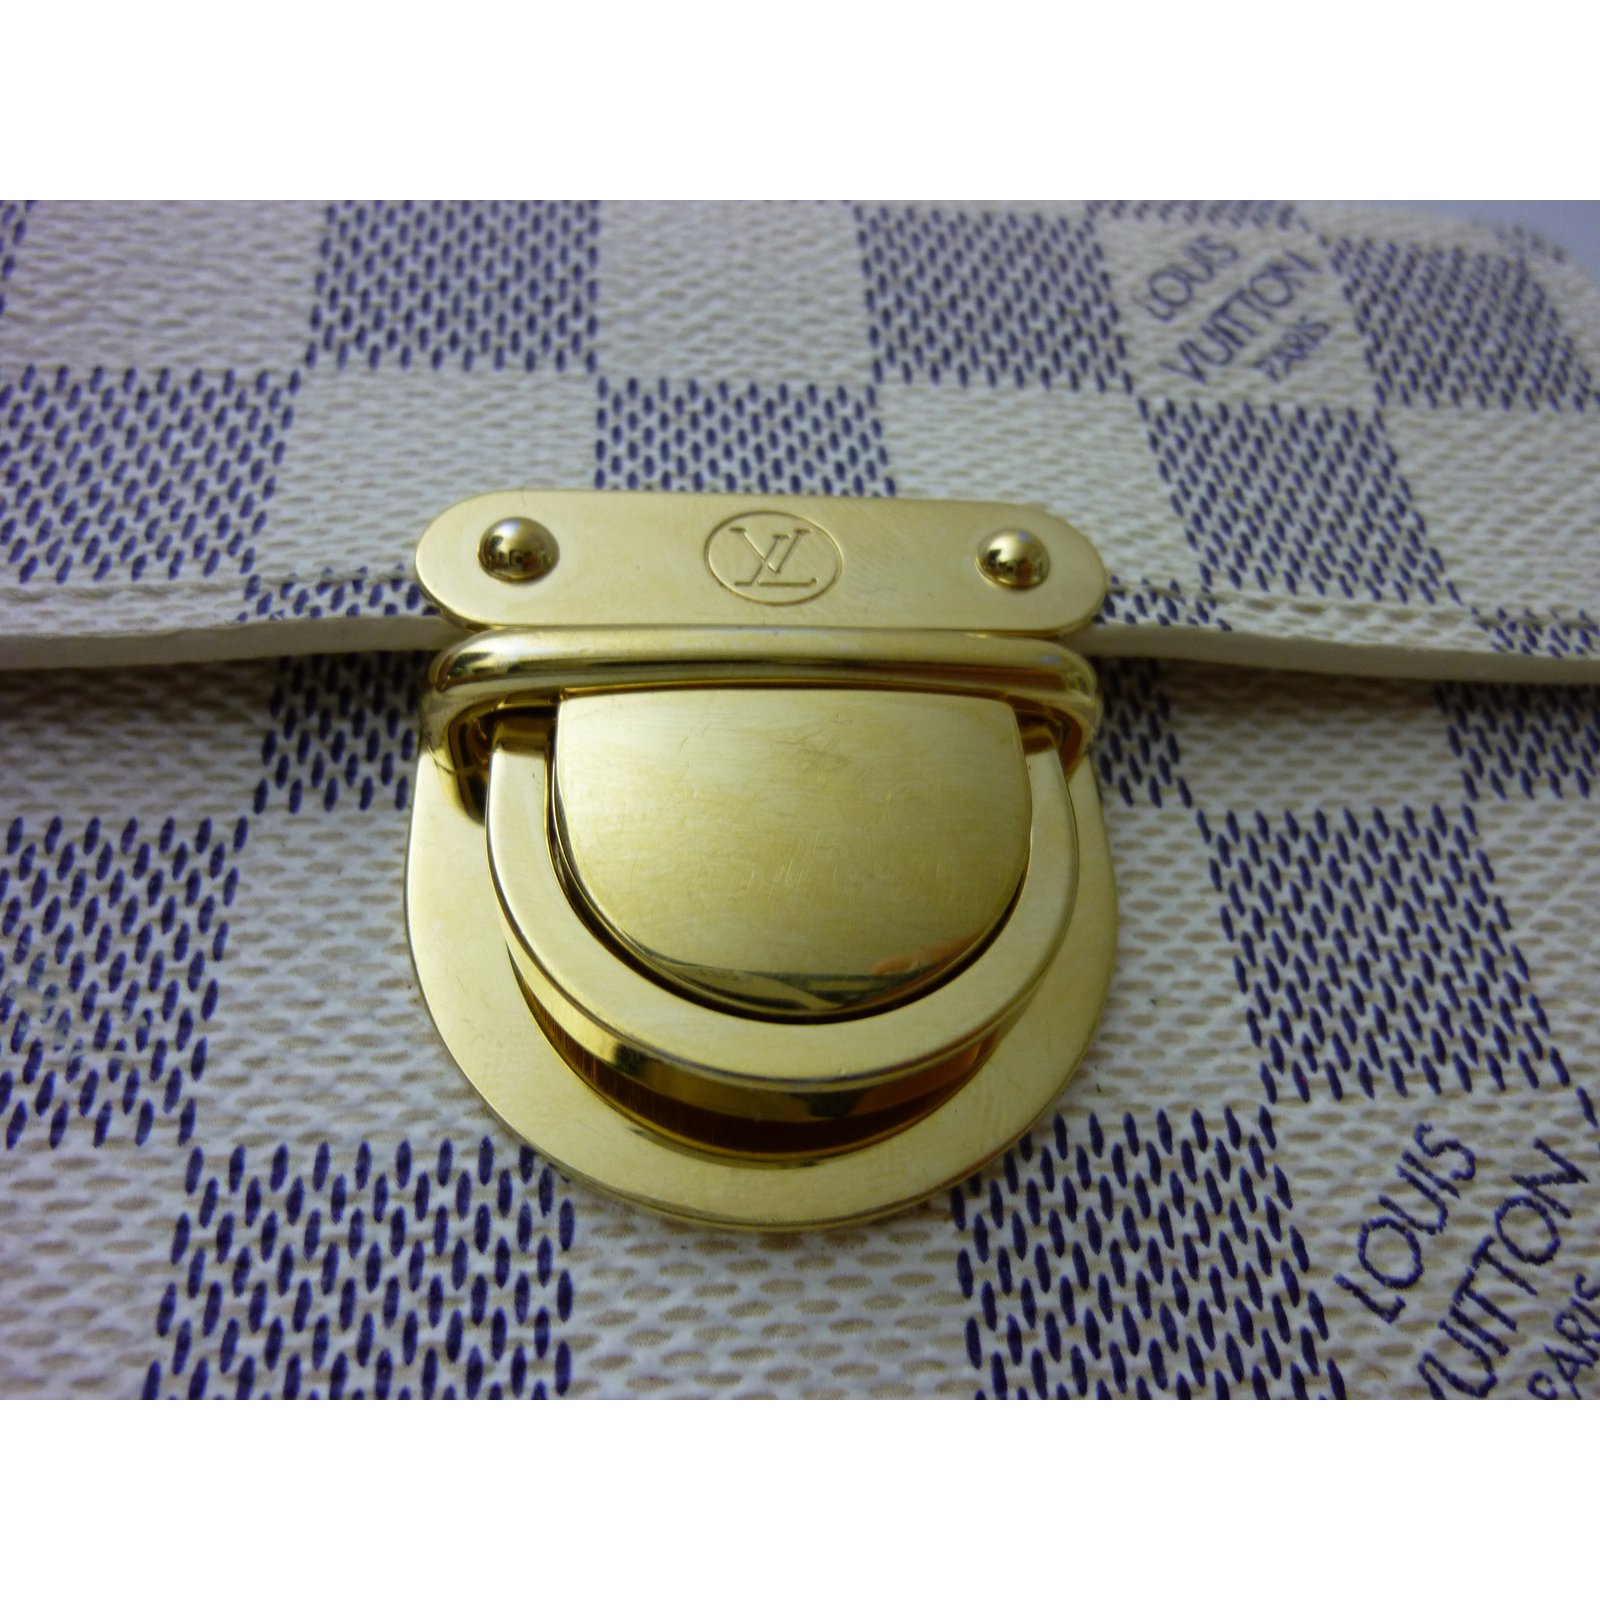 LOUIS VUITTON Bijou Sac Surprise Key Holder Metal Gold M66188 LV